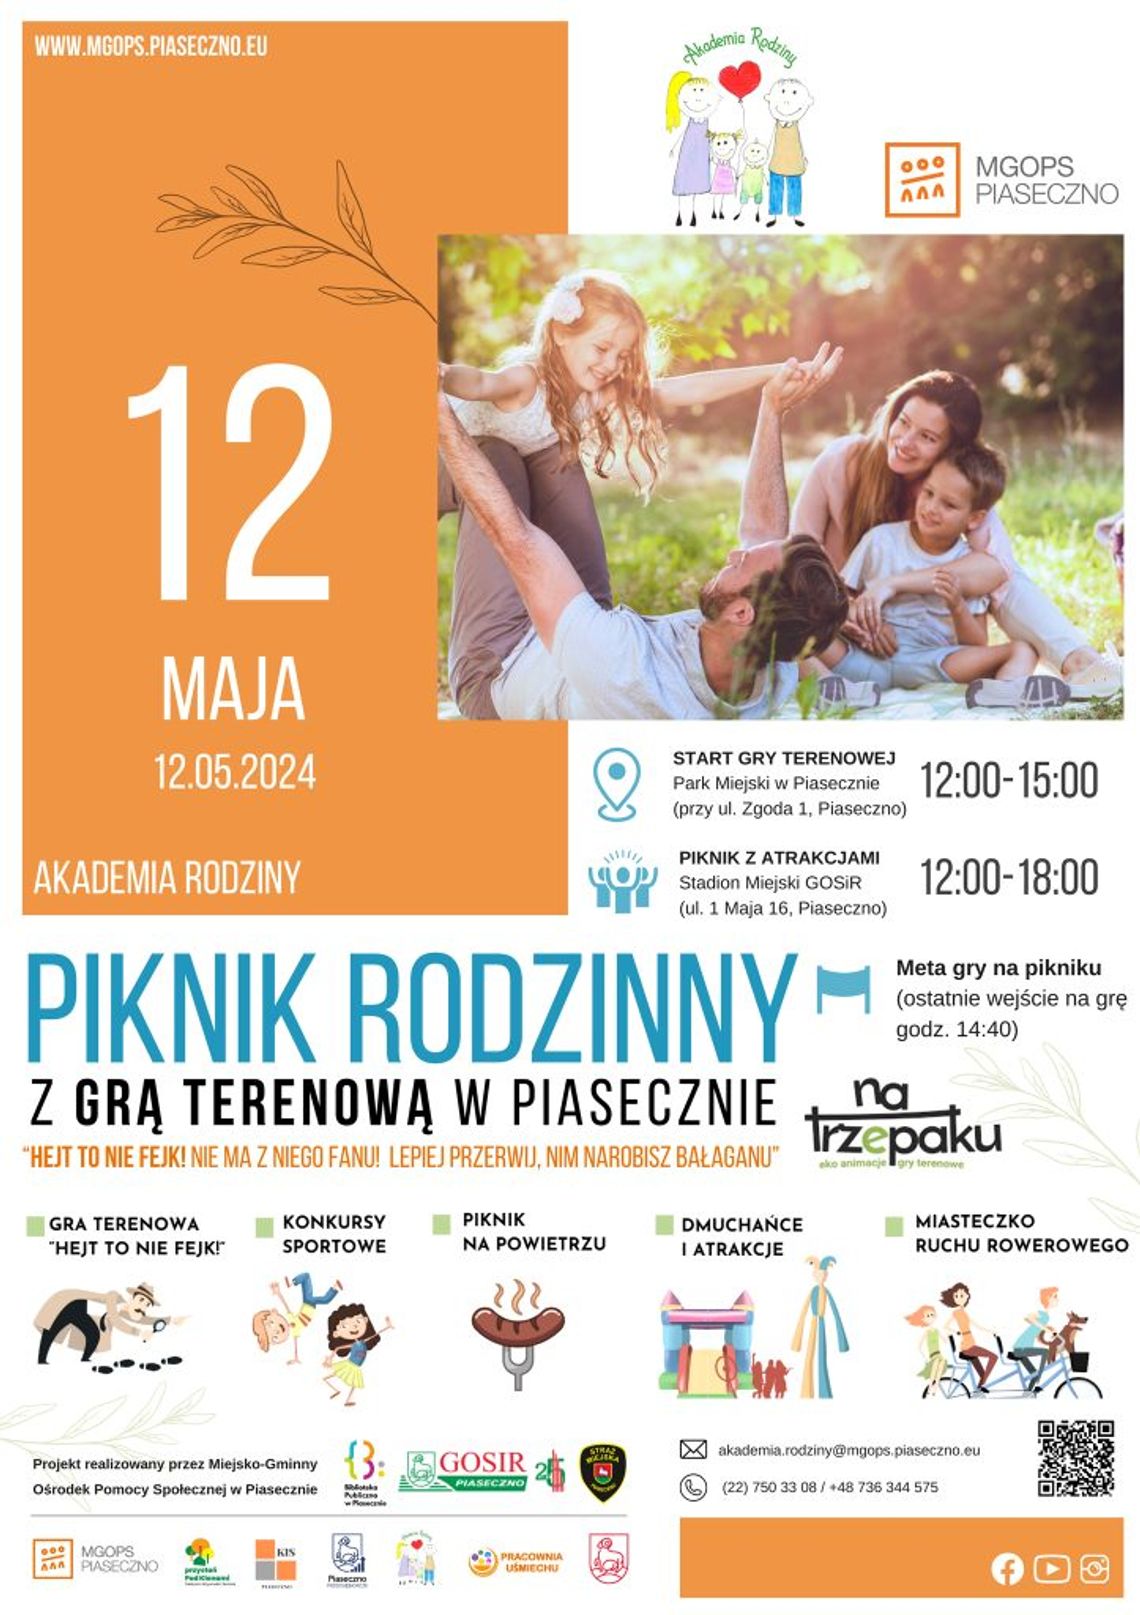 Piknik rodzinny i gra terenowa w Piasecznie